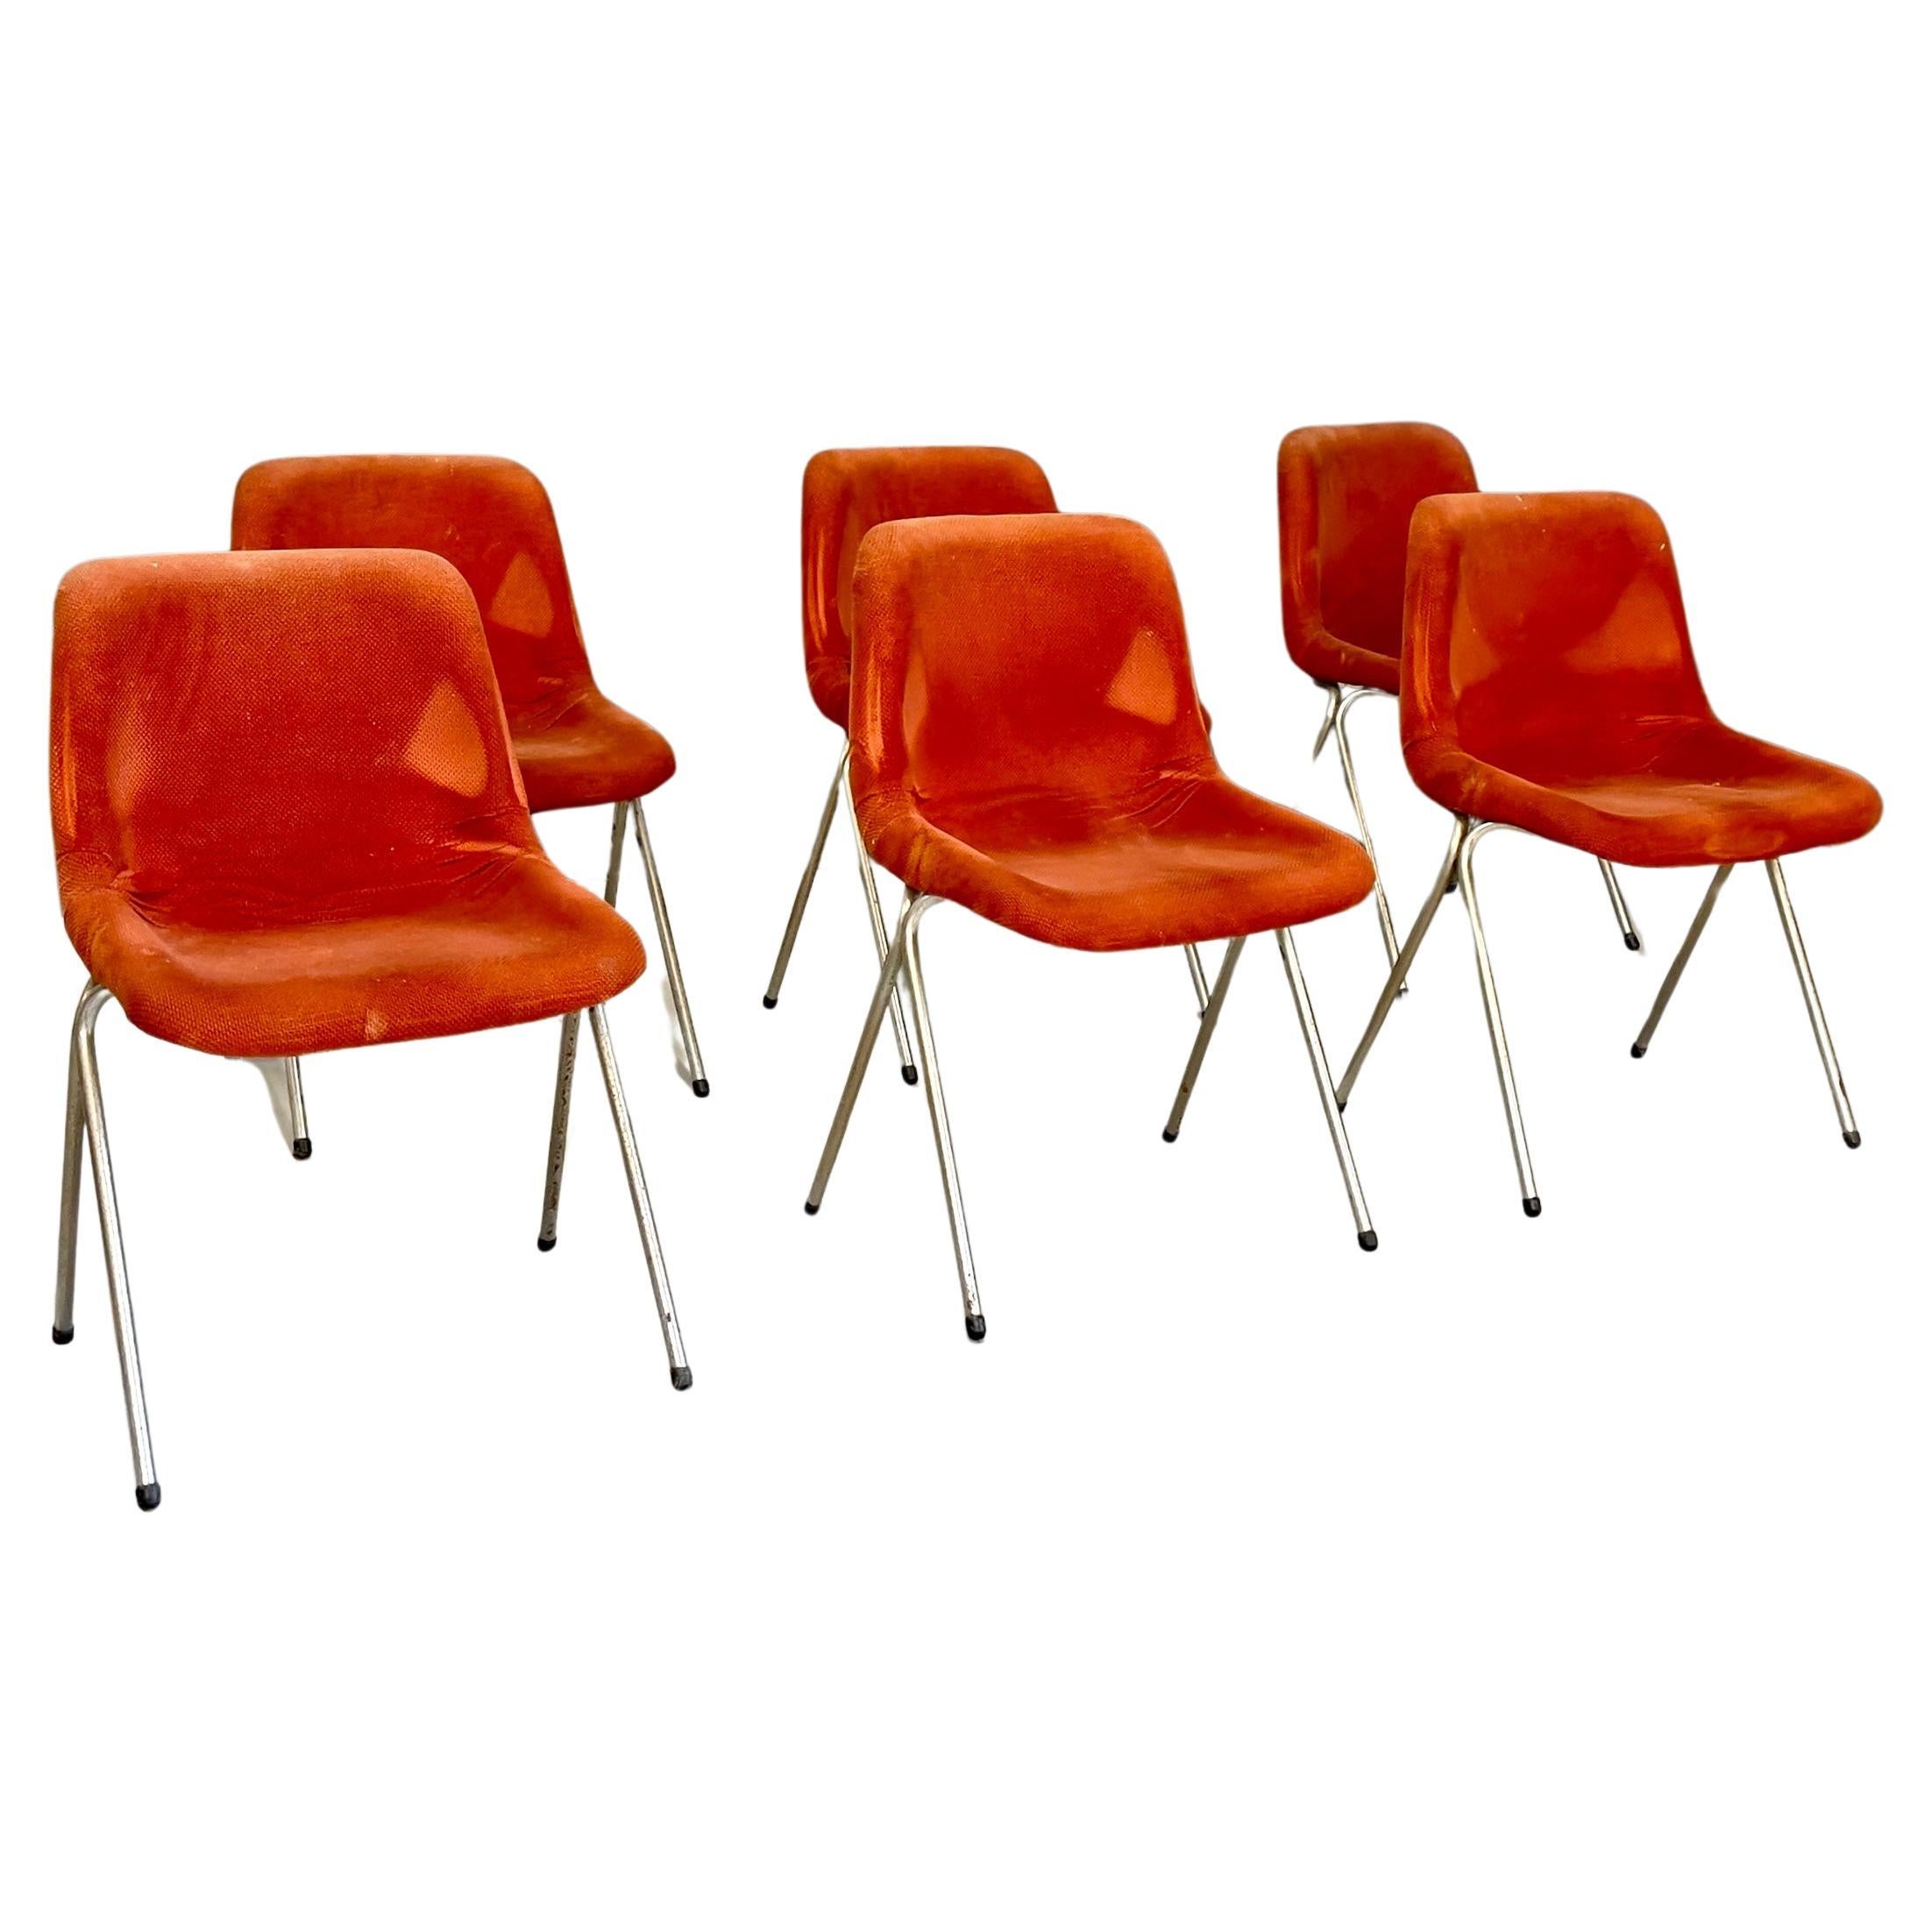 Sechs Stühle, 1960er Jahre